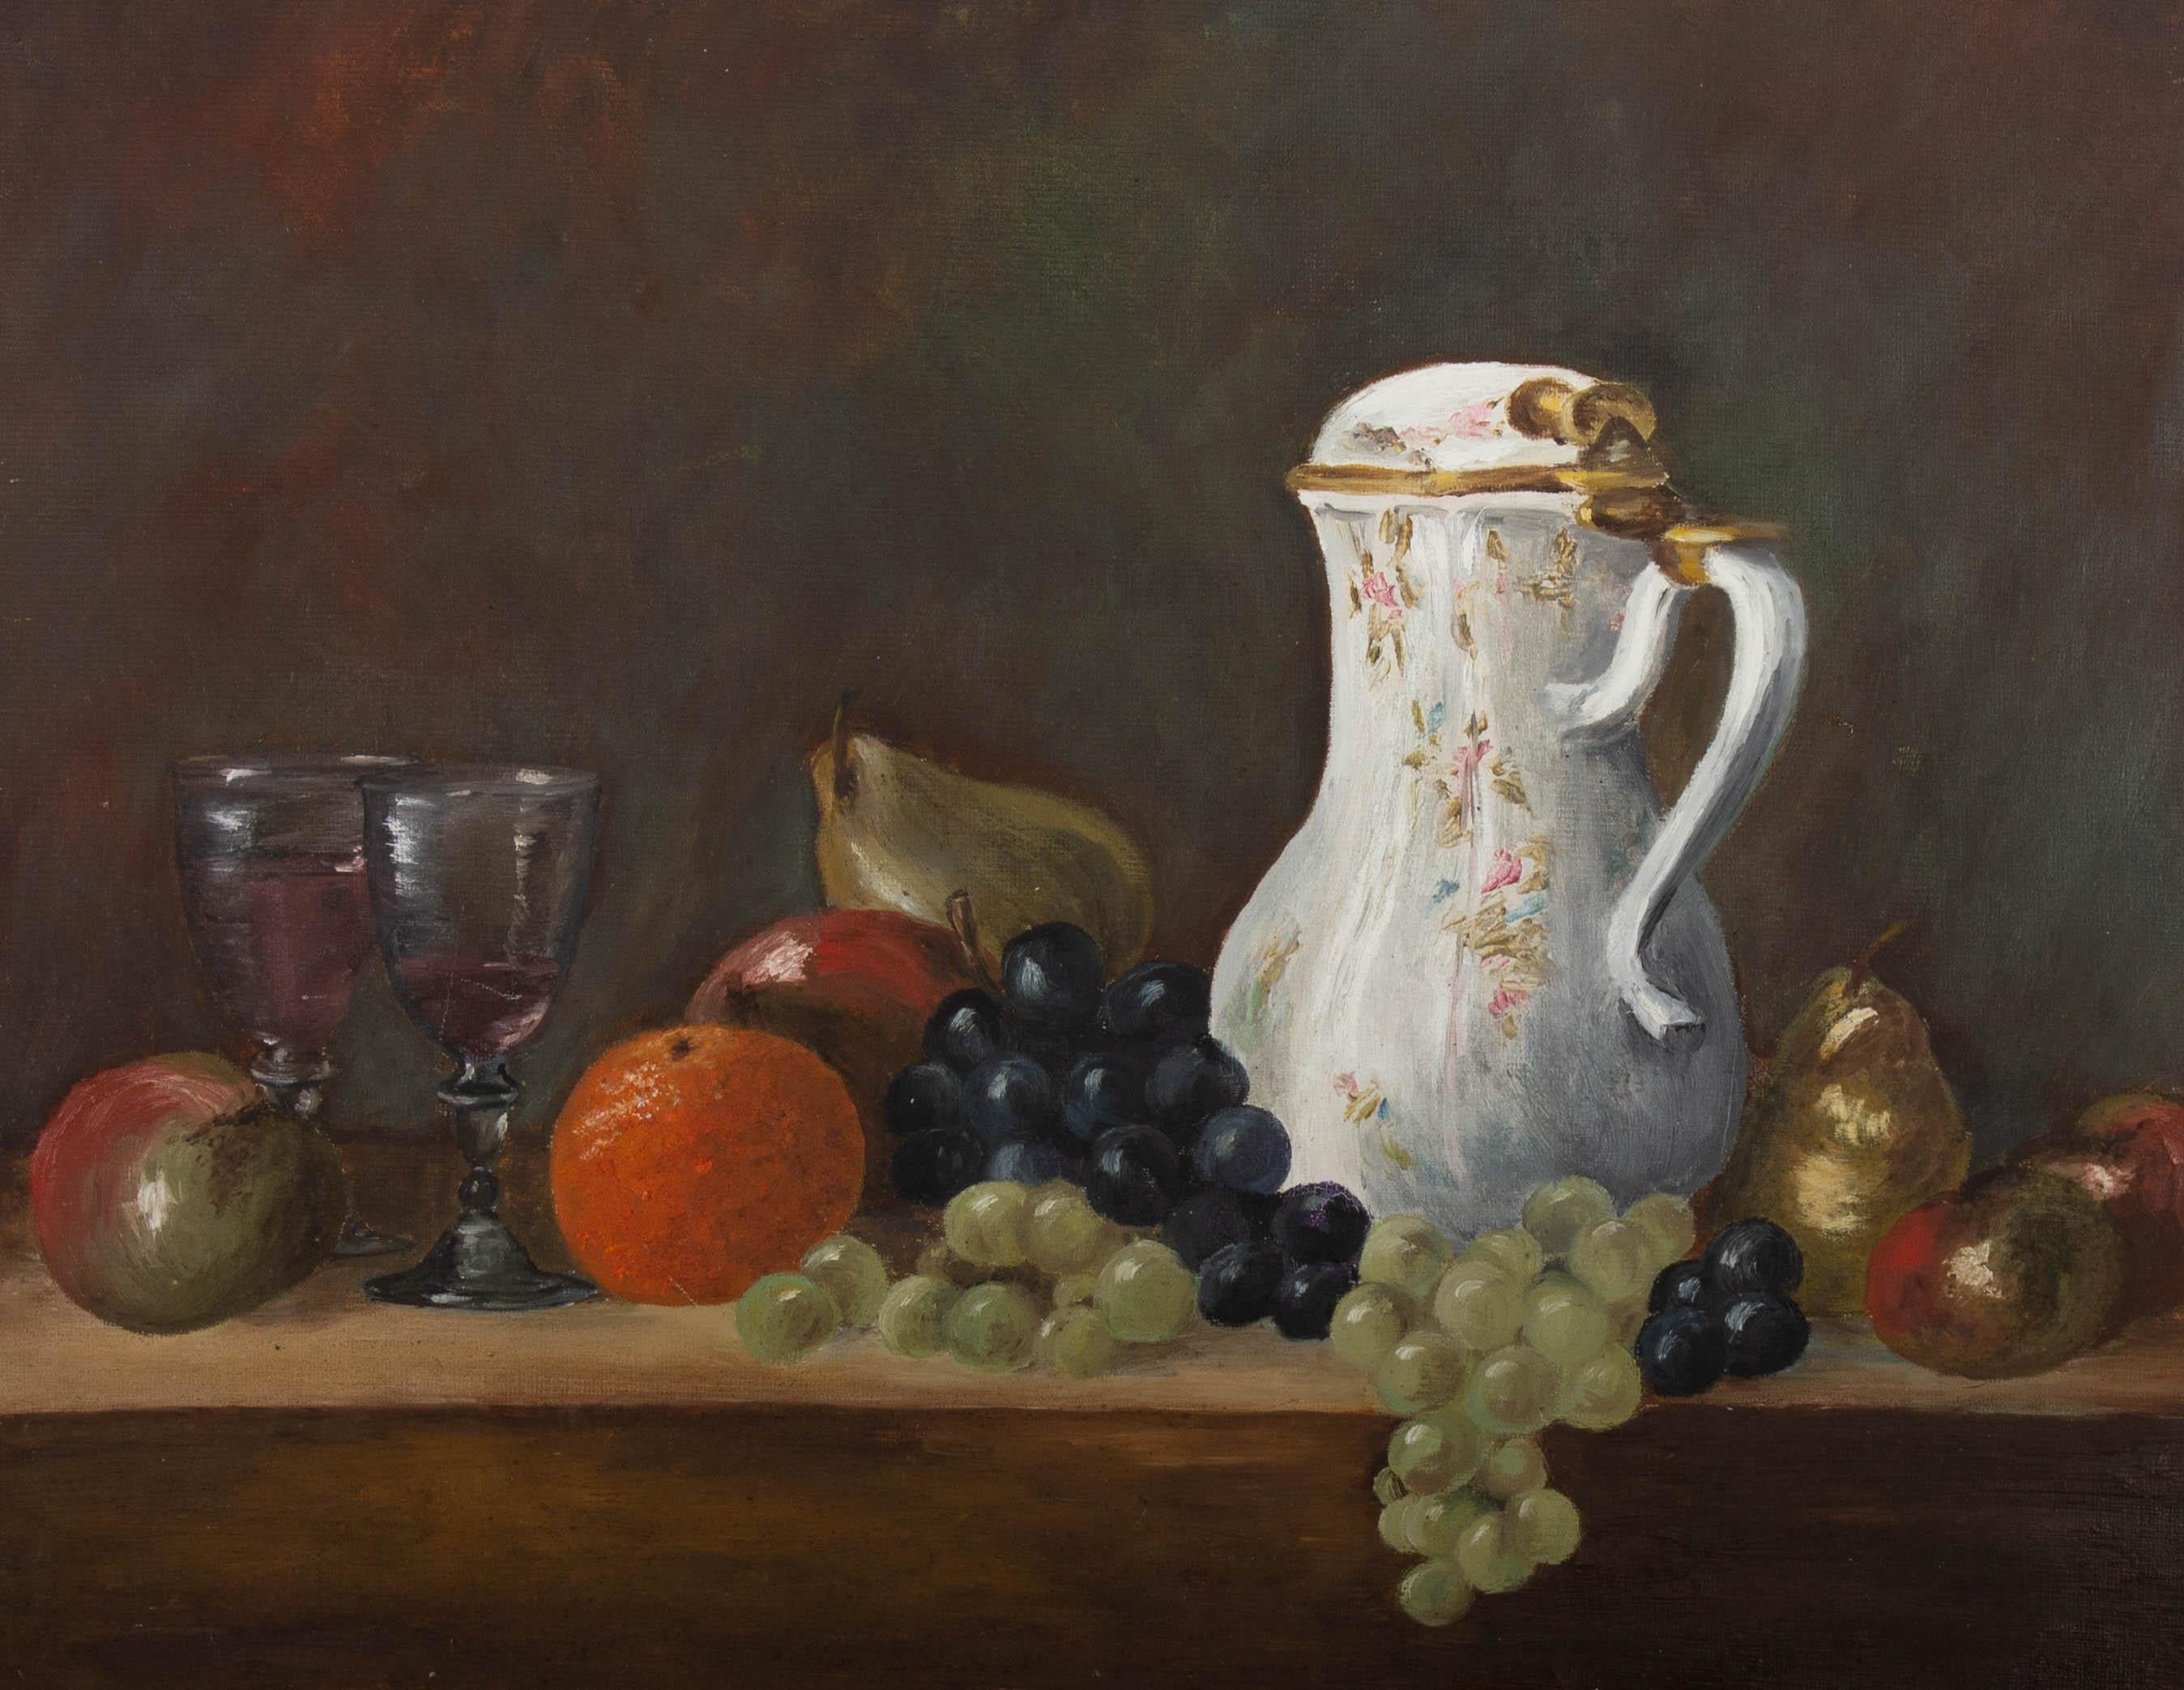 Öl-Tisch des 20. Jahrhunderts mit Wein und Obst – Painting von Unknown